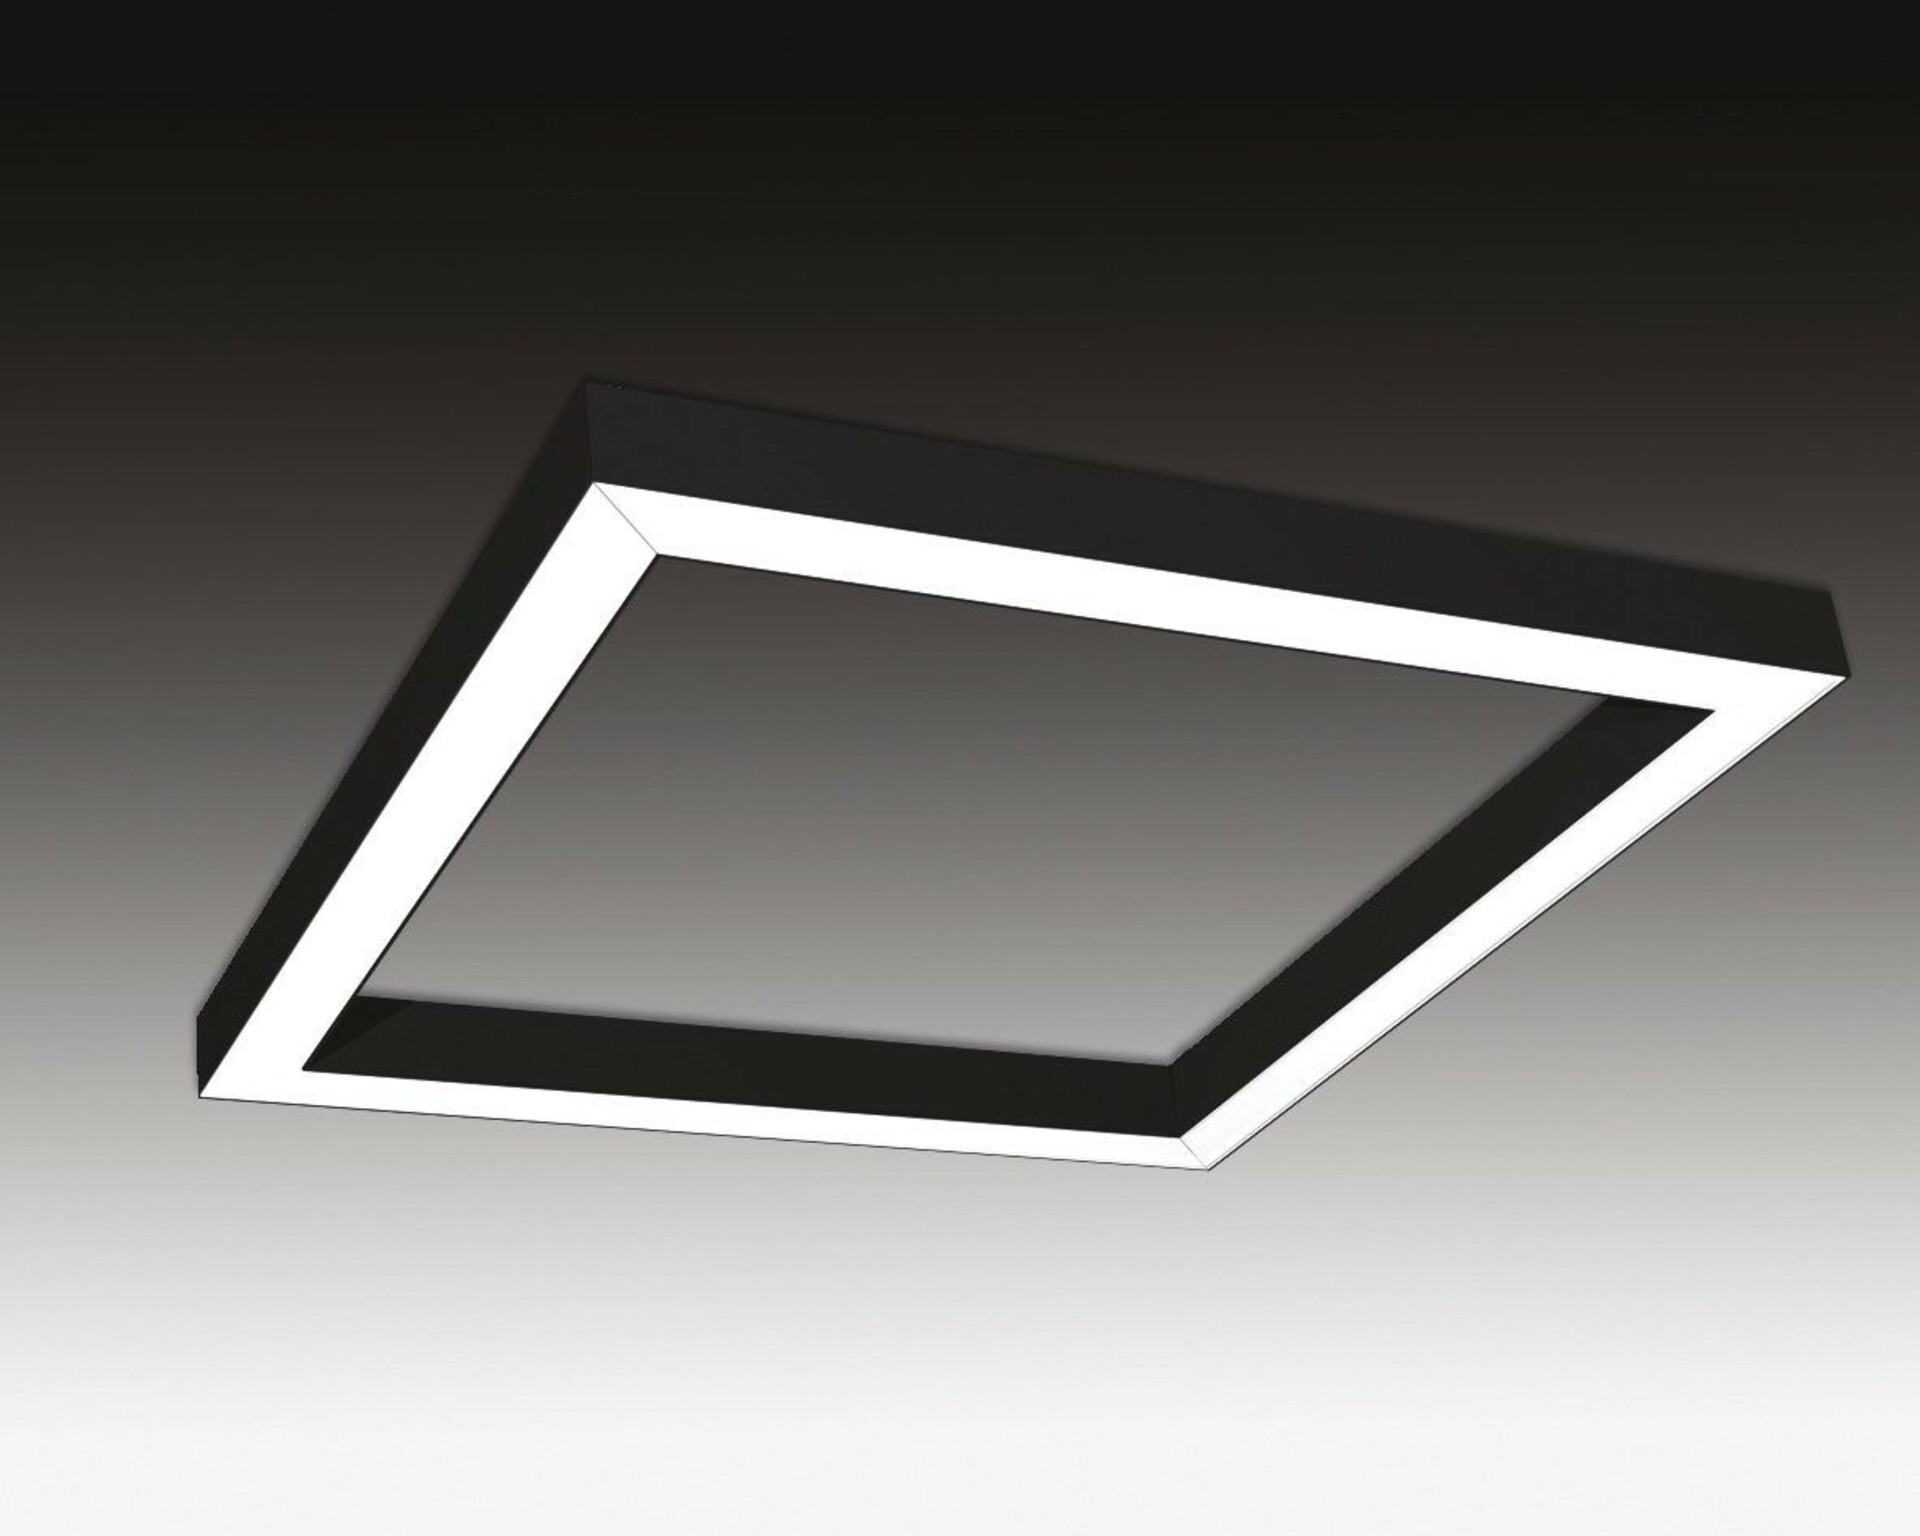 SEC Závěsné LED svítidlo nepřímé osvětlení WEGA-FRAME2-AA-DIM-DALI, 50 W, černá, 886 x 886 x 50 mm, 3000 K, 6540 lm 321-B-003-01-02-SP